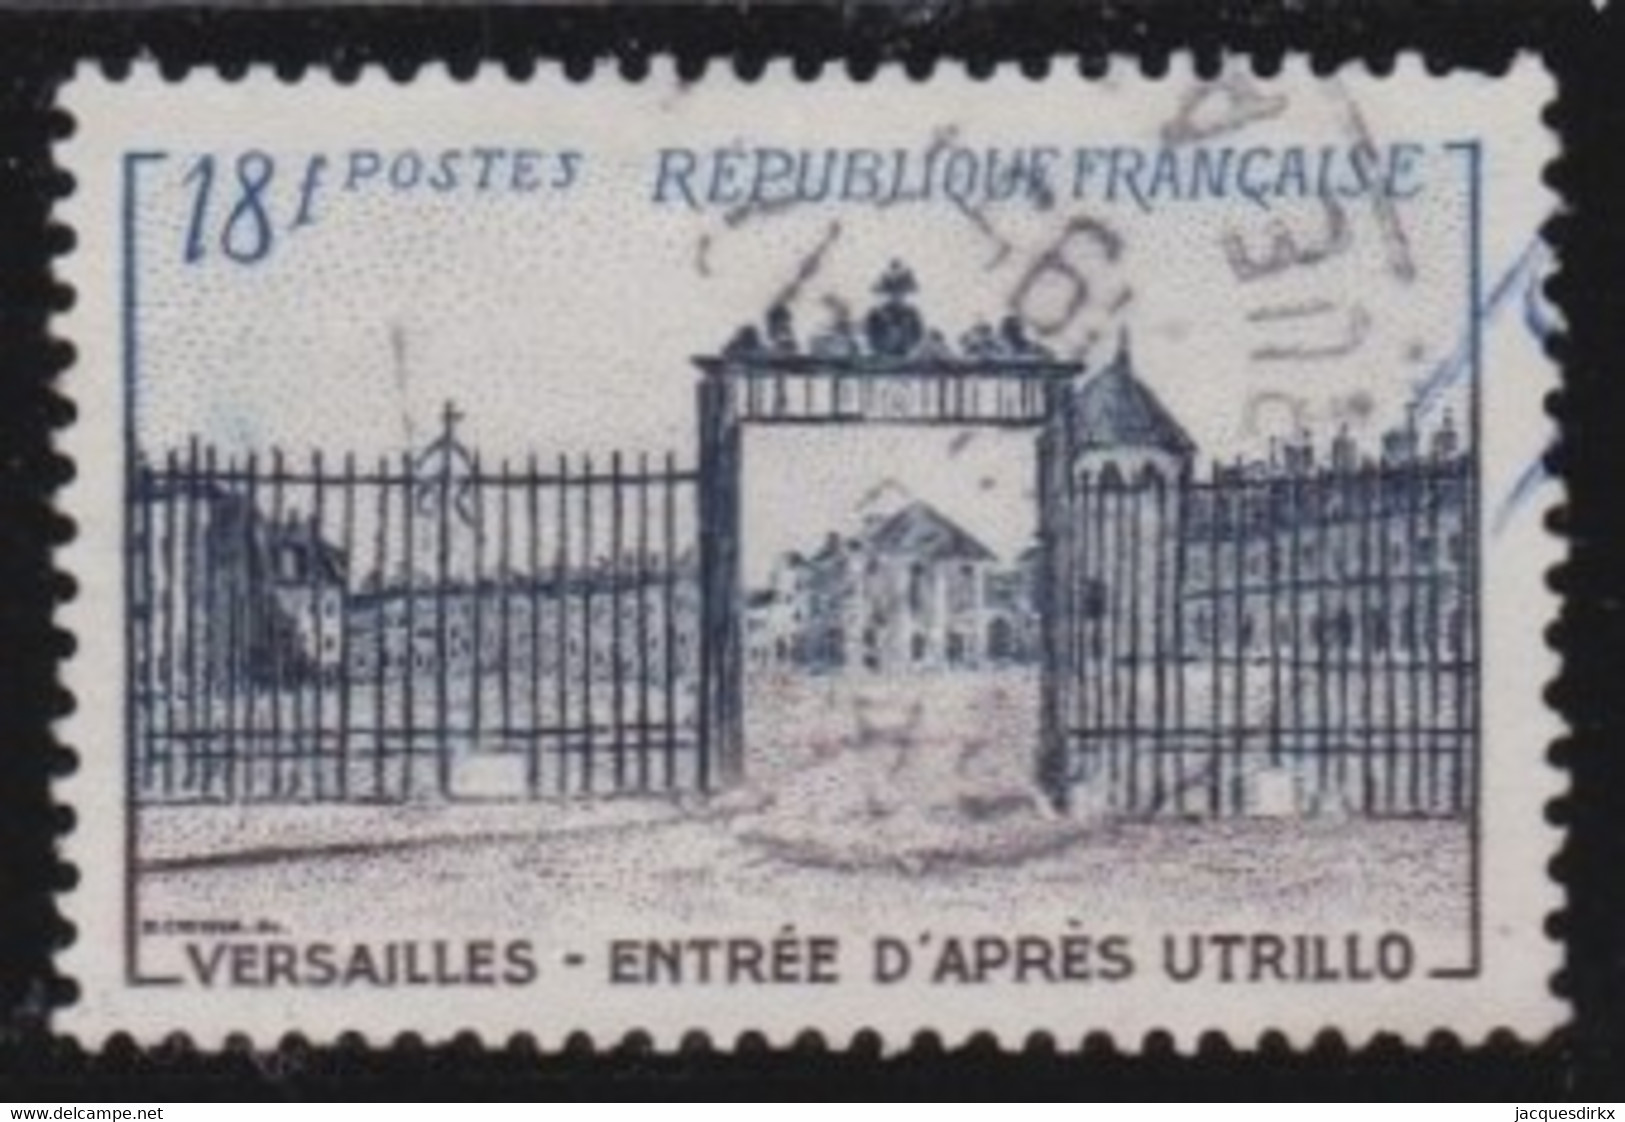 France   .   Y&T   .    988       .      O        .   Oblitéré - Used Stamps